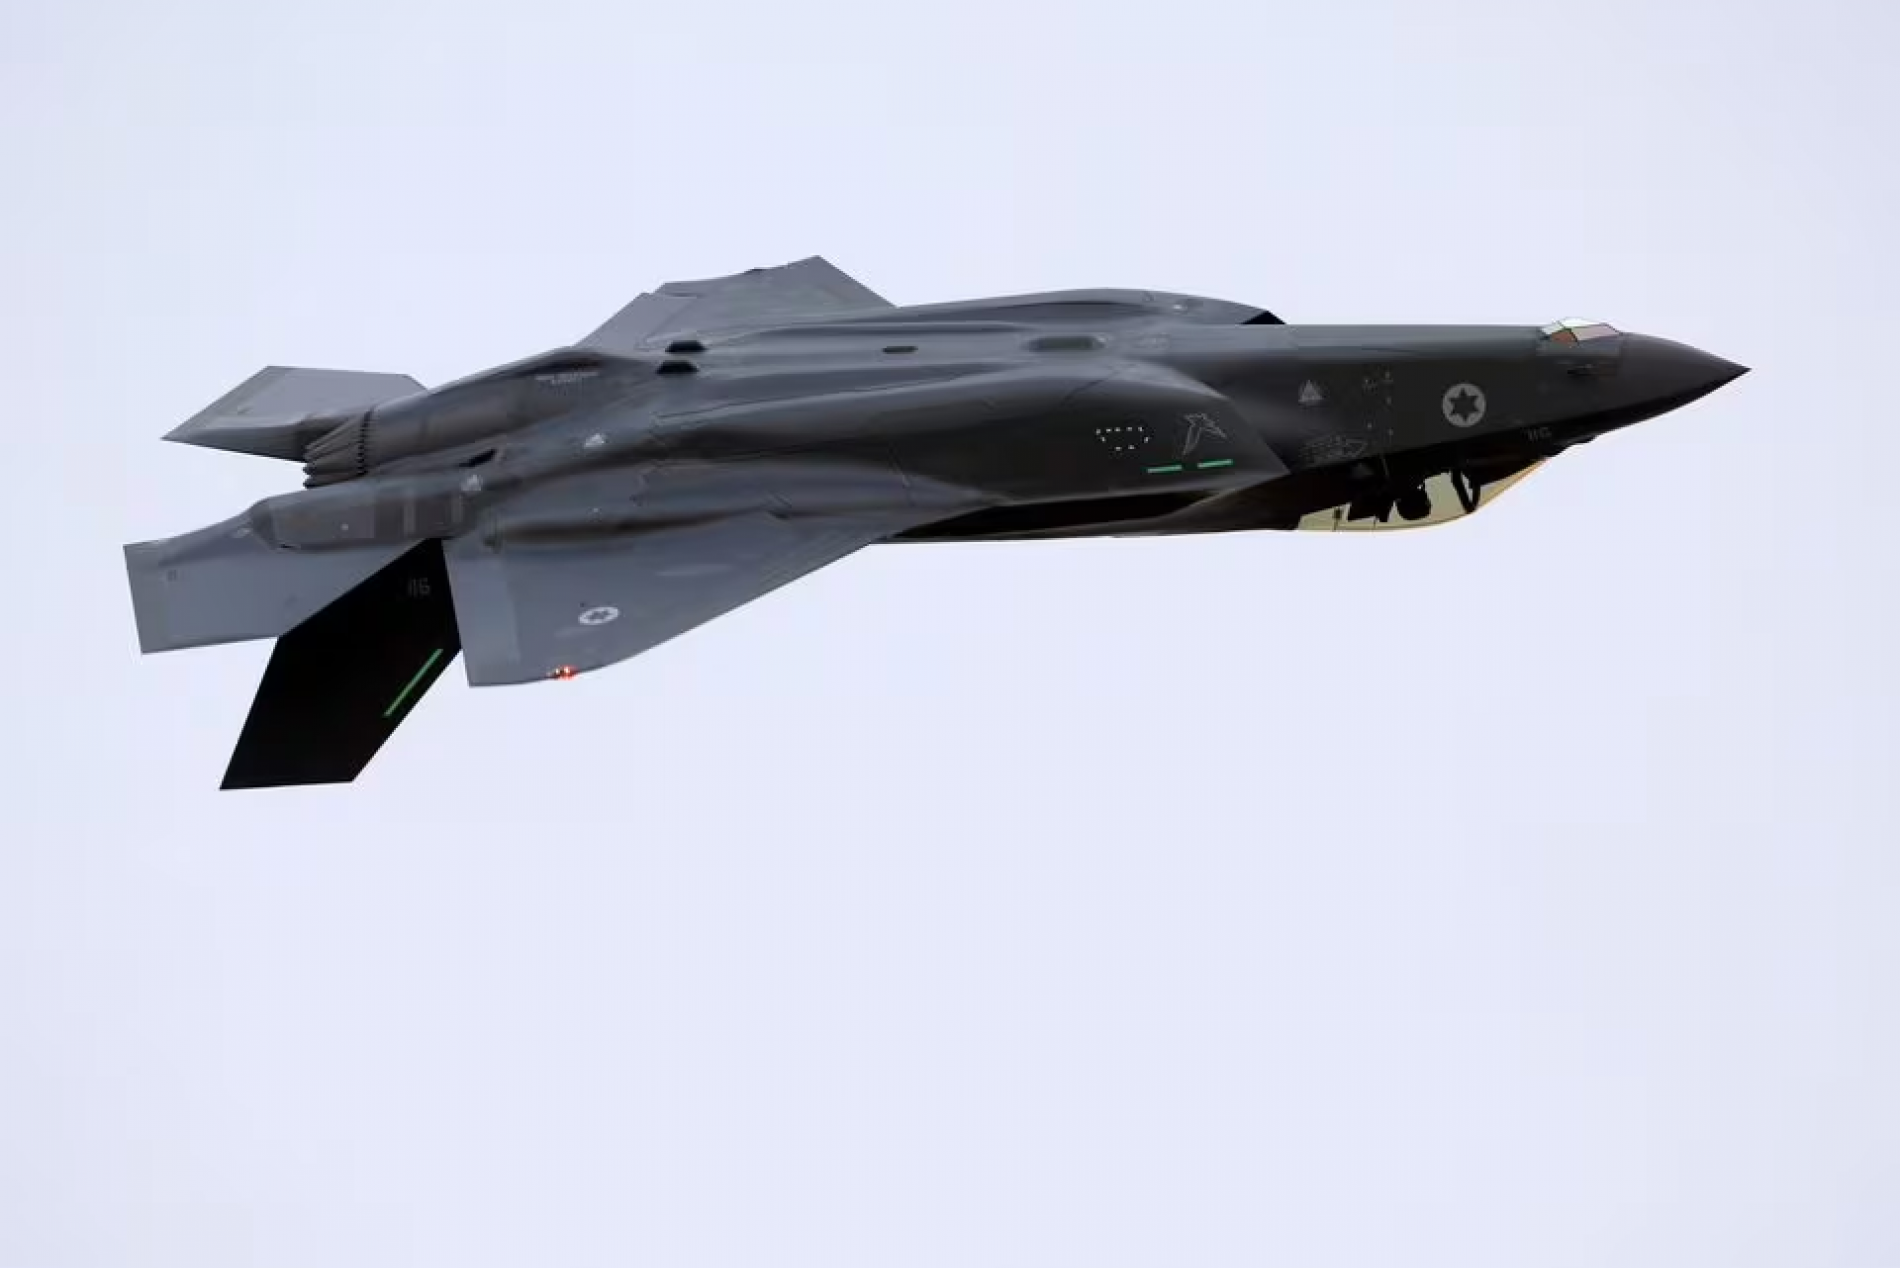 Holandski sud naložio je obustavu izvoza dijelova aviona F-35 u Izrael